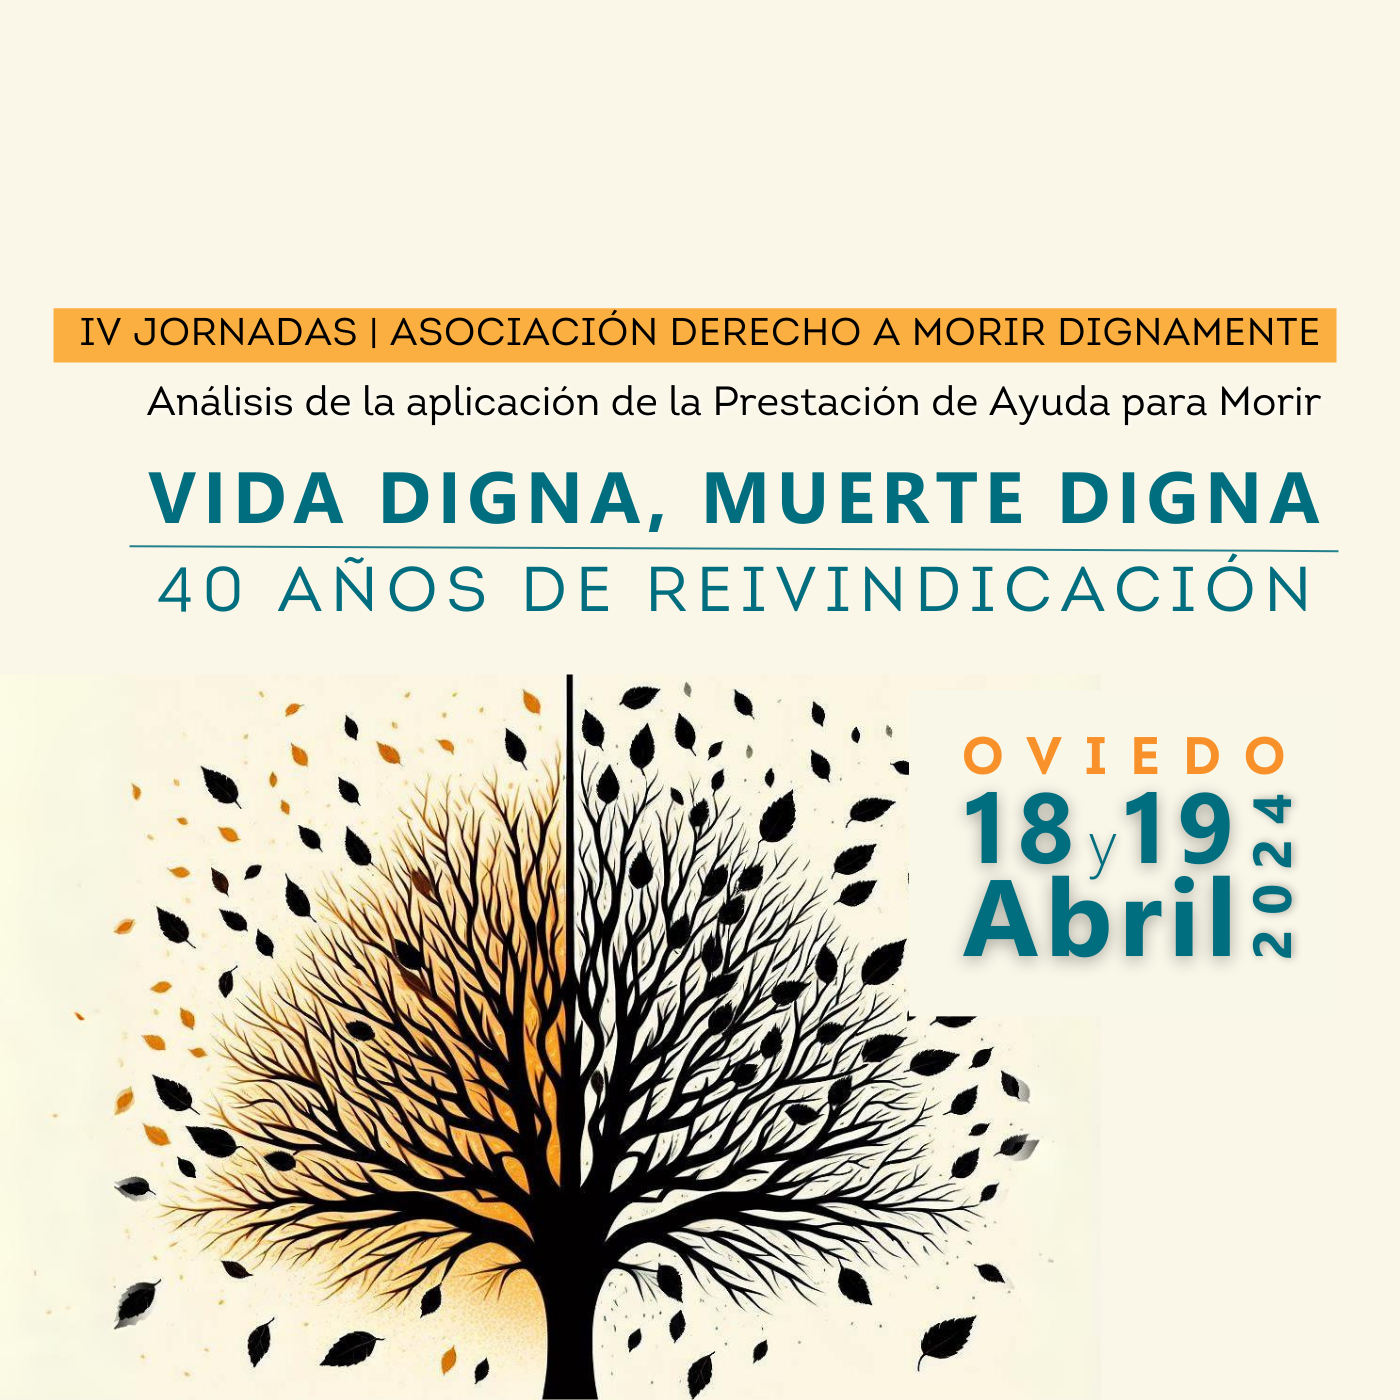 Featured image for “IV Jornadas Vida Digna, Muerte Digna de DMD”